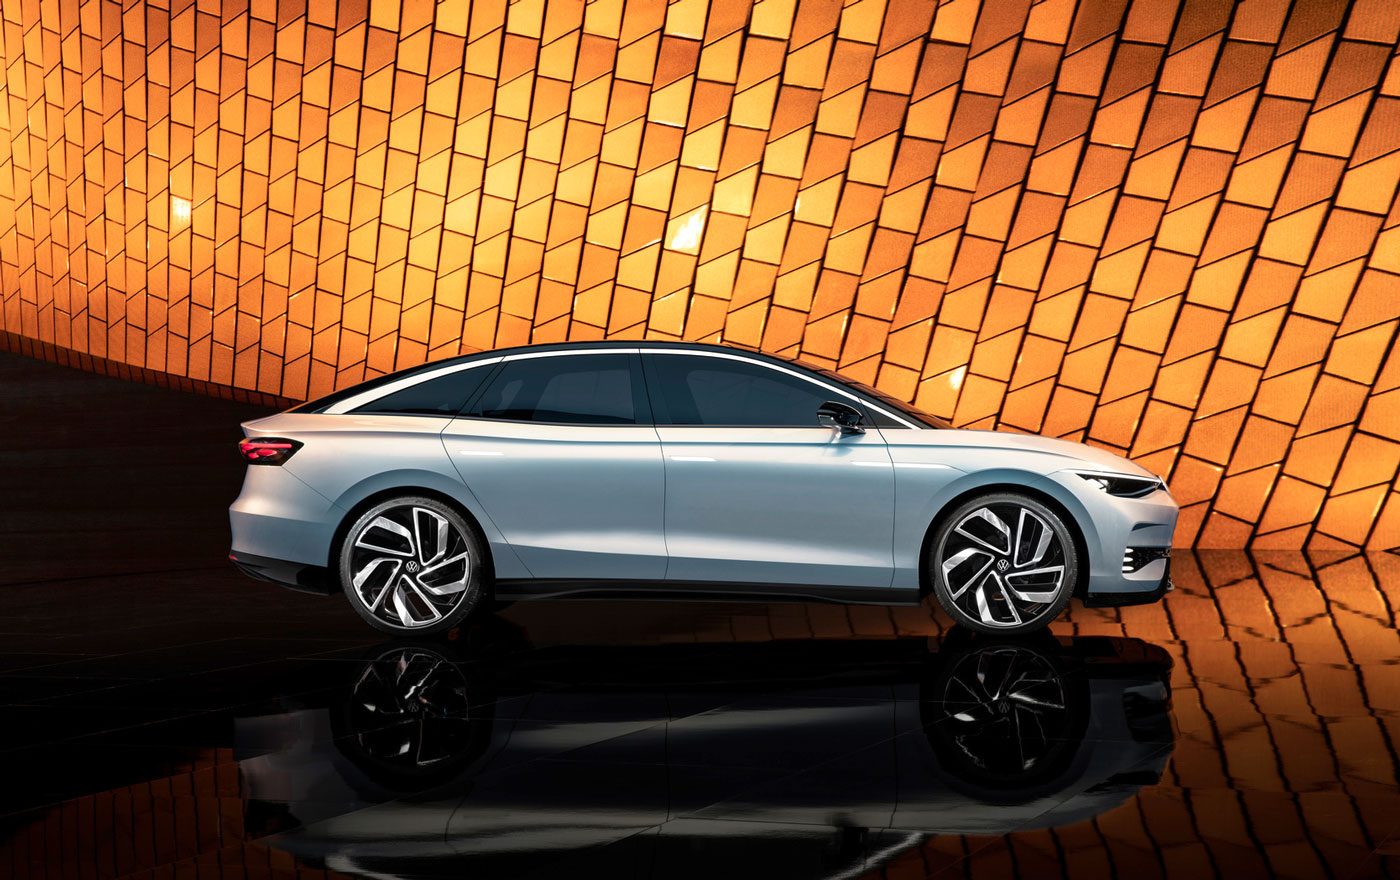 Volkswagen showt volgende week nieuwste ID-model